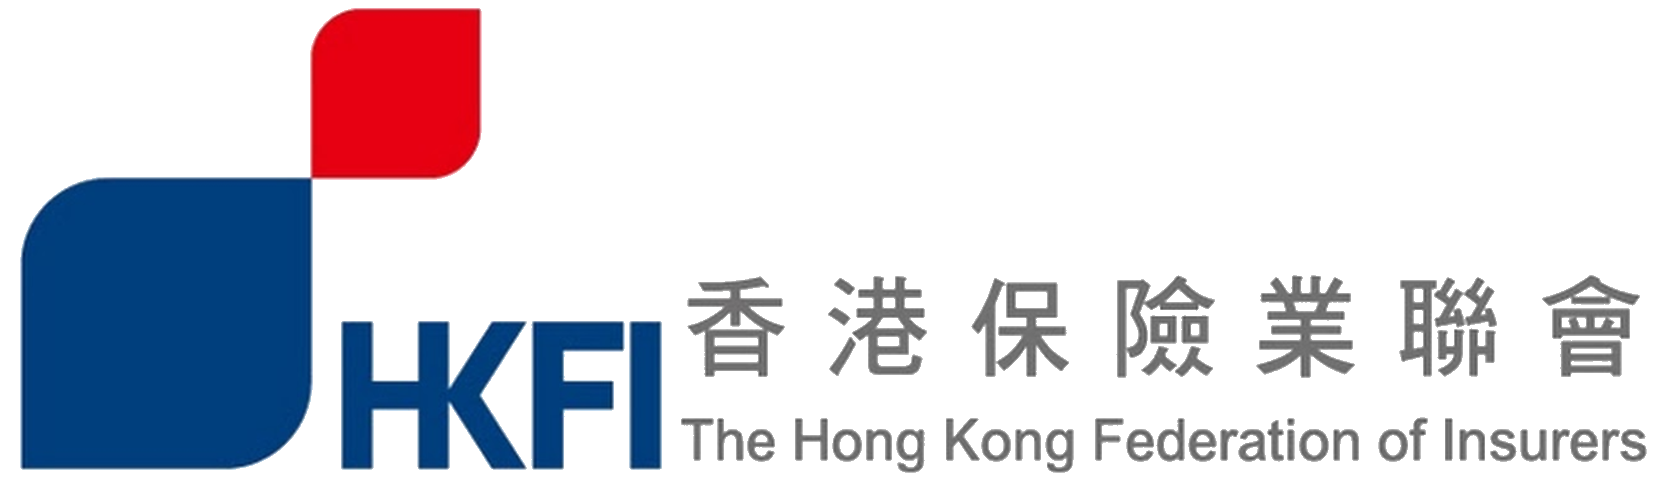 香港保险业联会